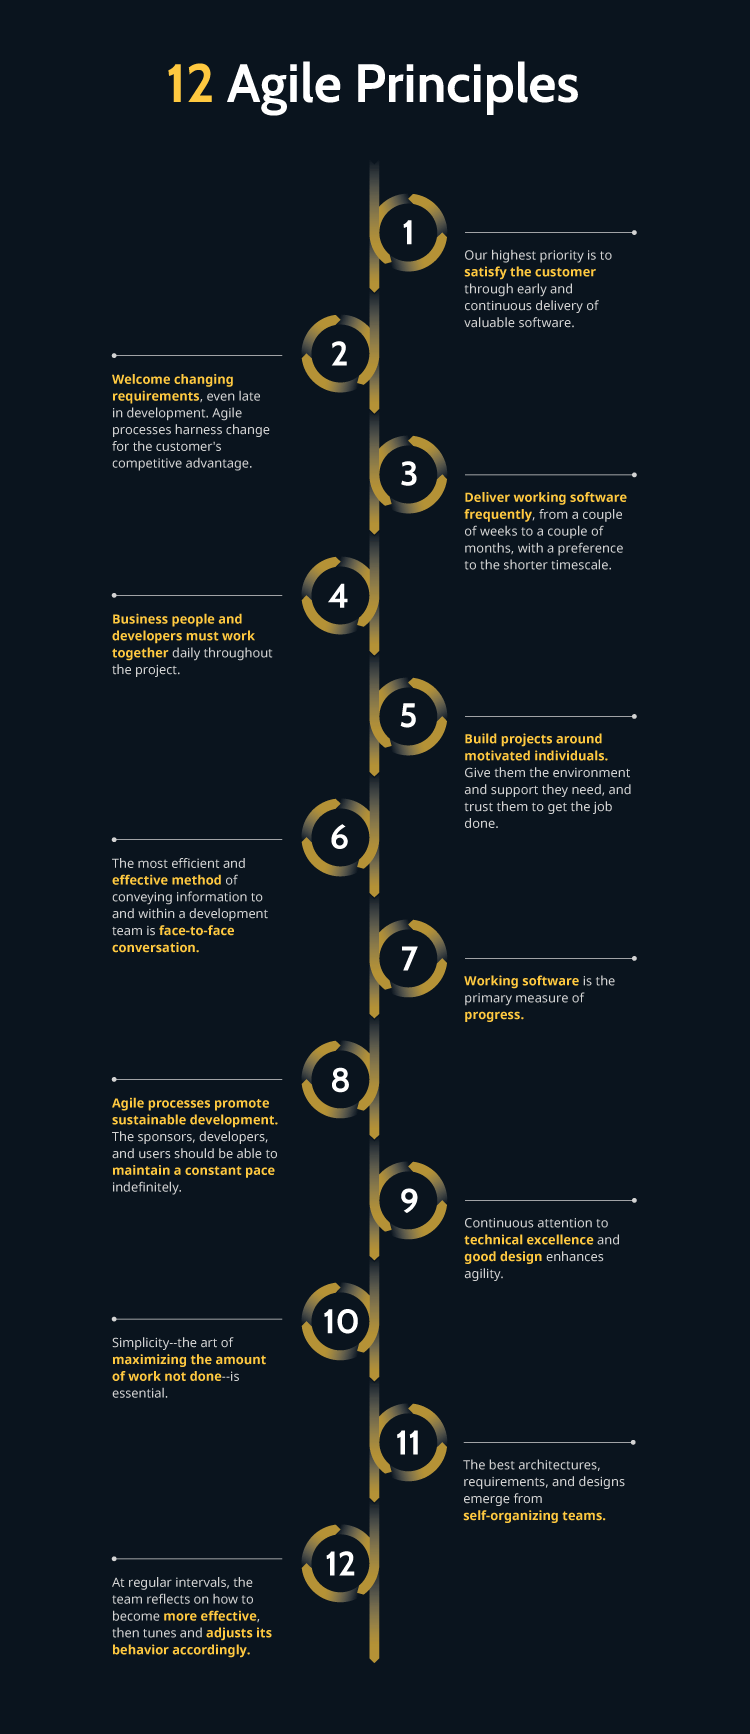 12 agile principles